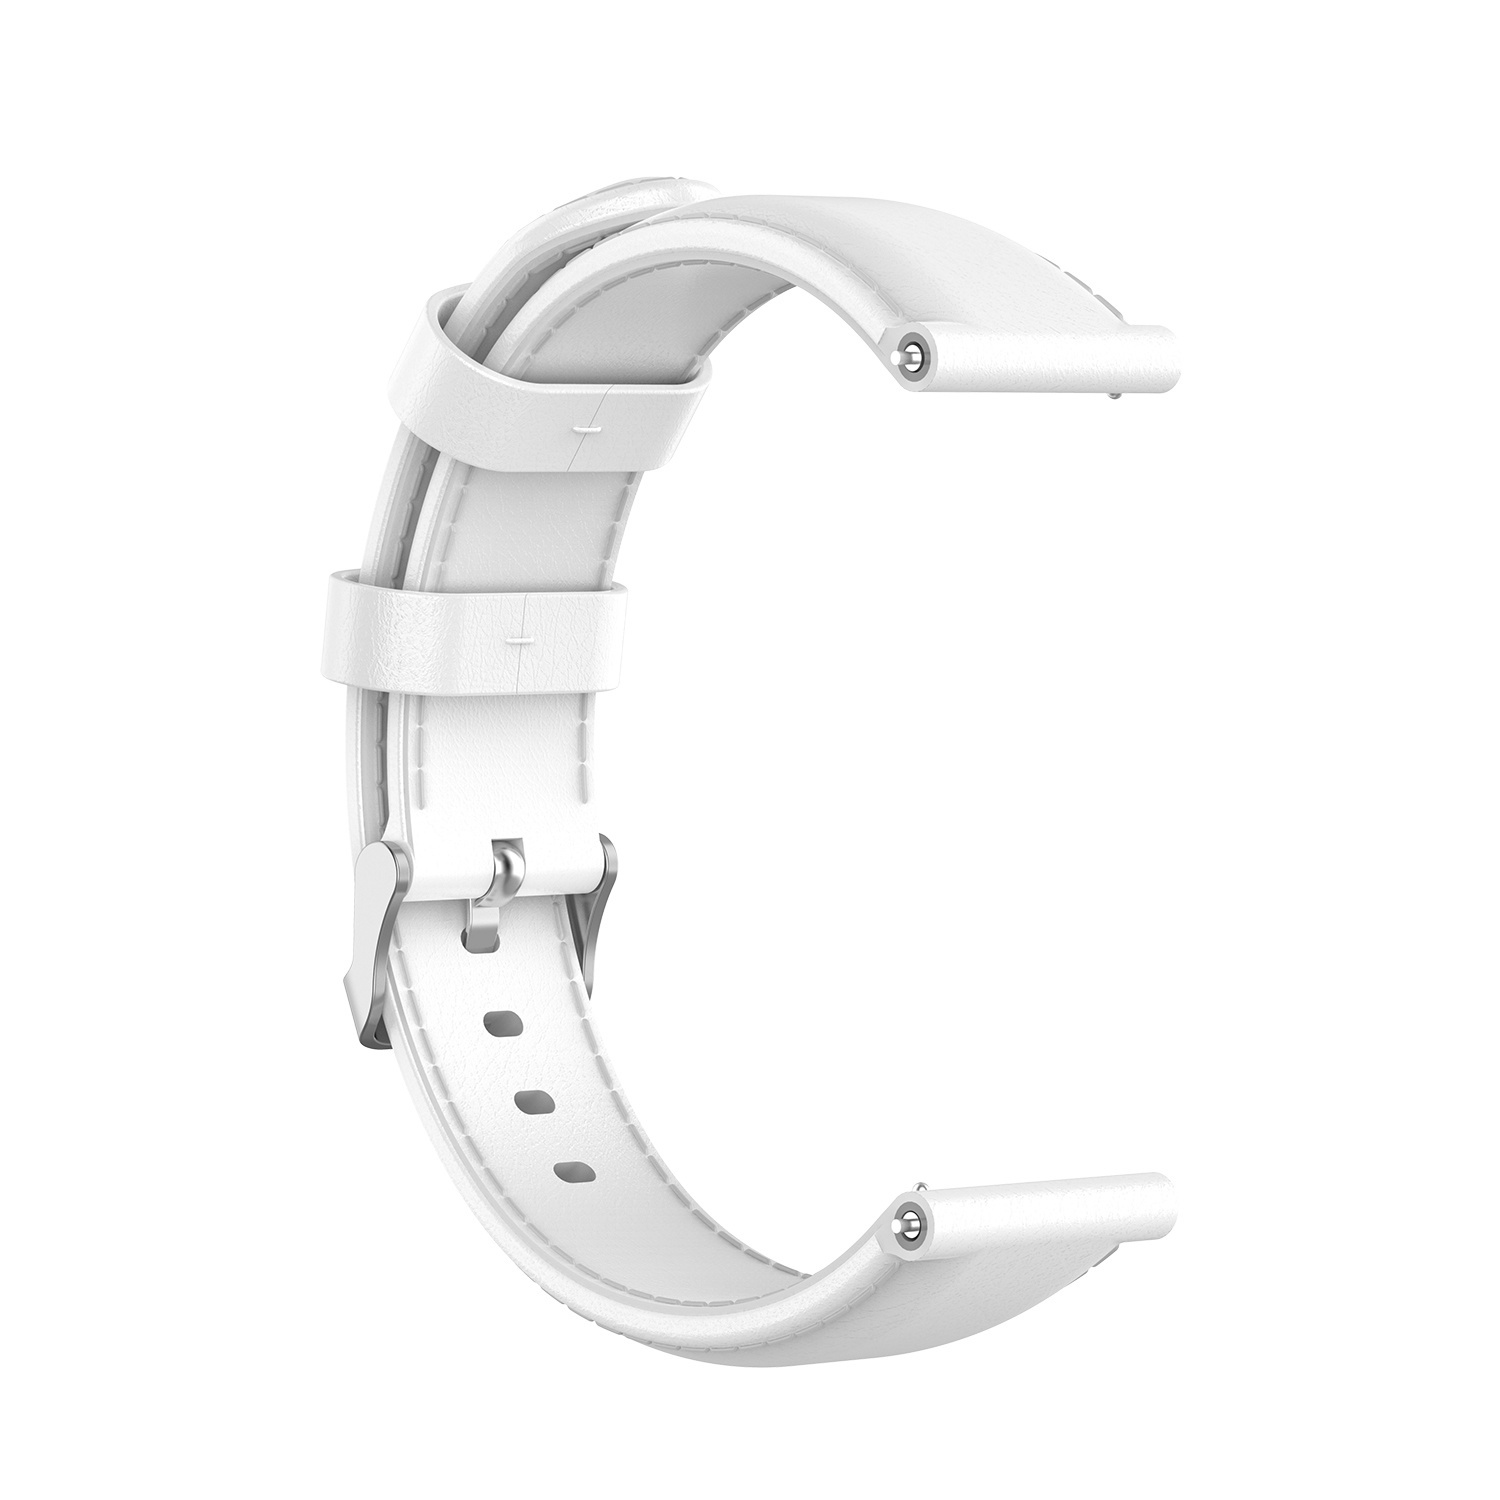 Correa de piel para el Huawei Watch GT - blanco